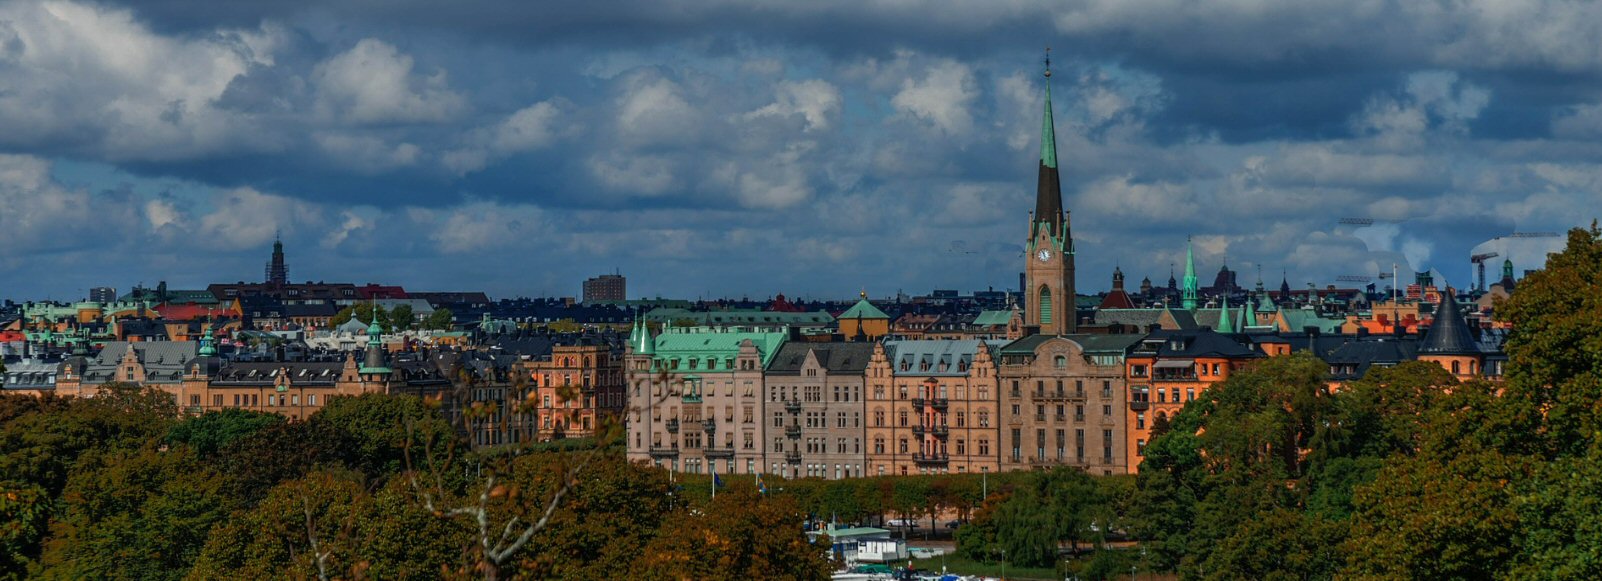 Ofertas de Traslados en Estocolmo. Traslados económicos en Estocolmo 